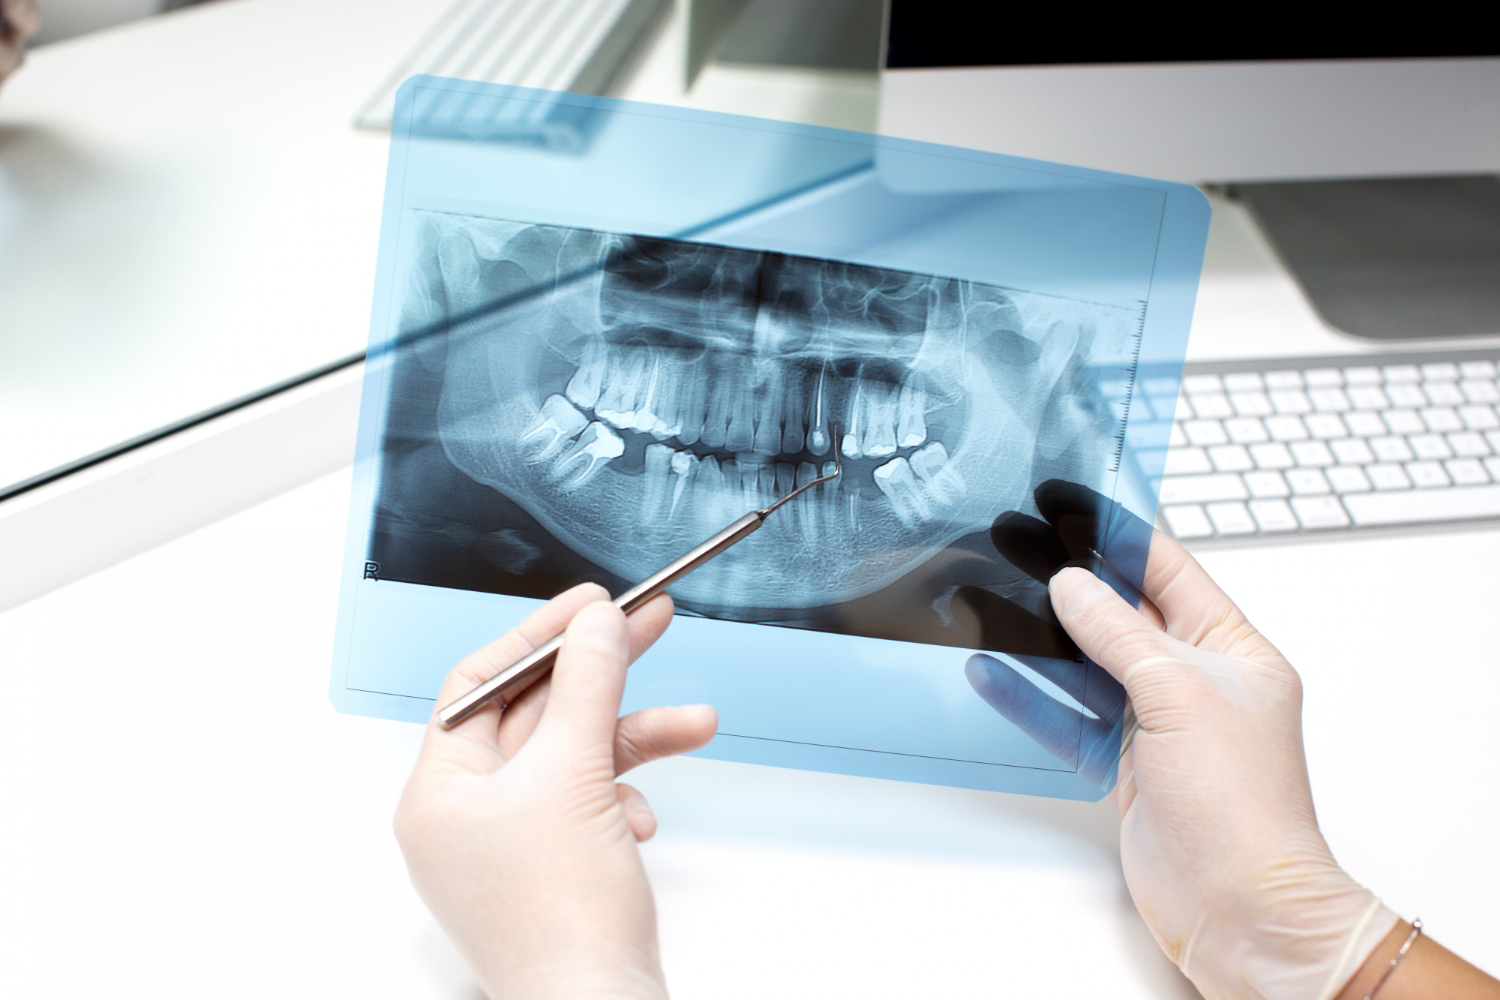 ИИ-алгоритм определяет пол человека по рентгеновским снимкам зубов